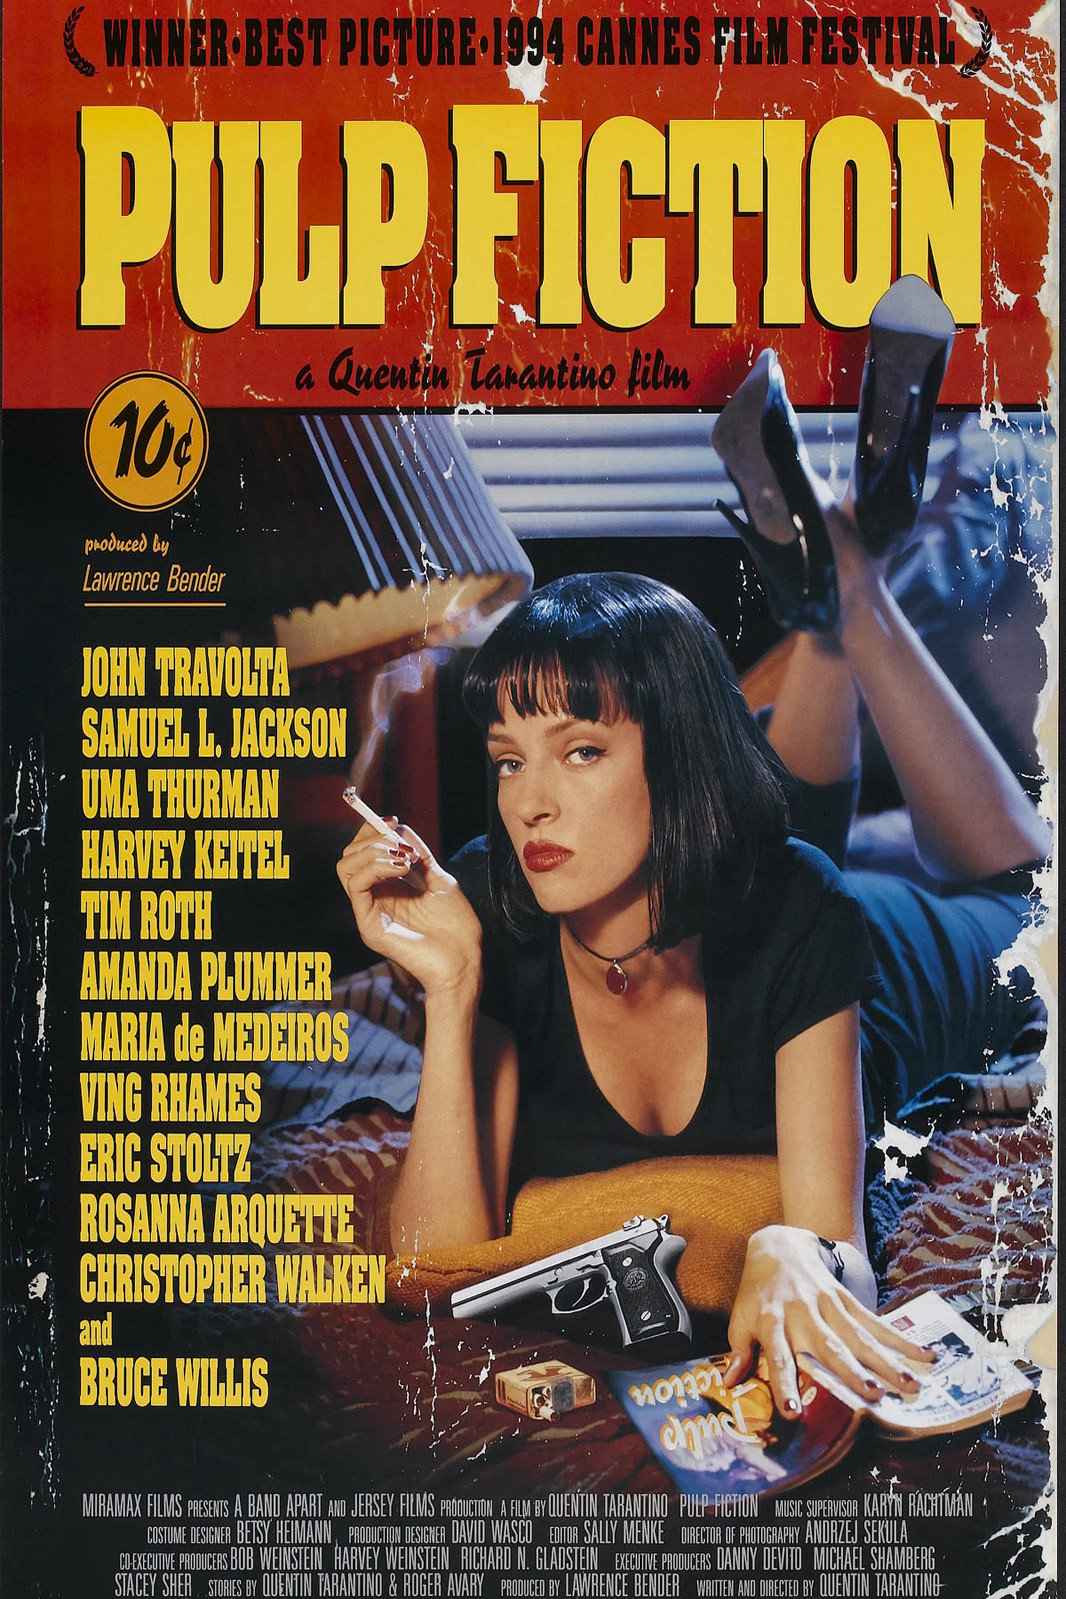 Pulp Fiction - May 30th at 7pm